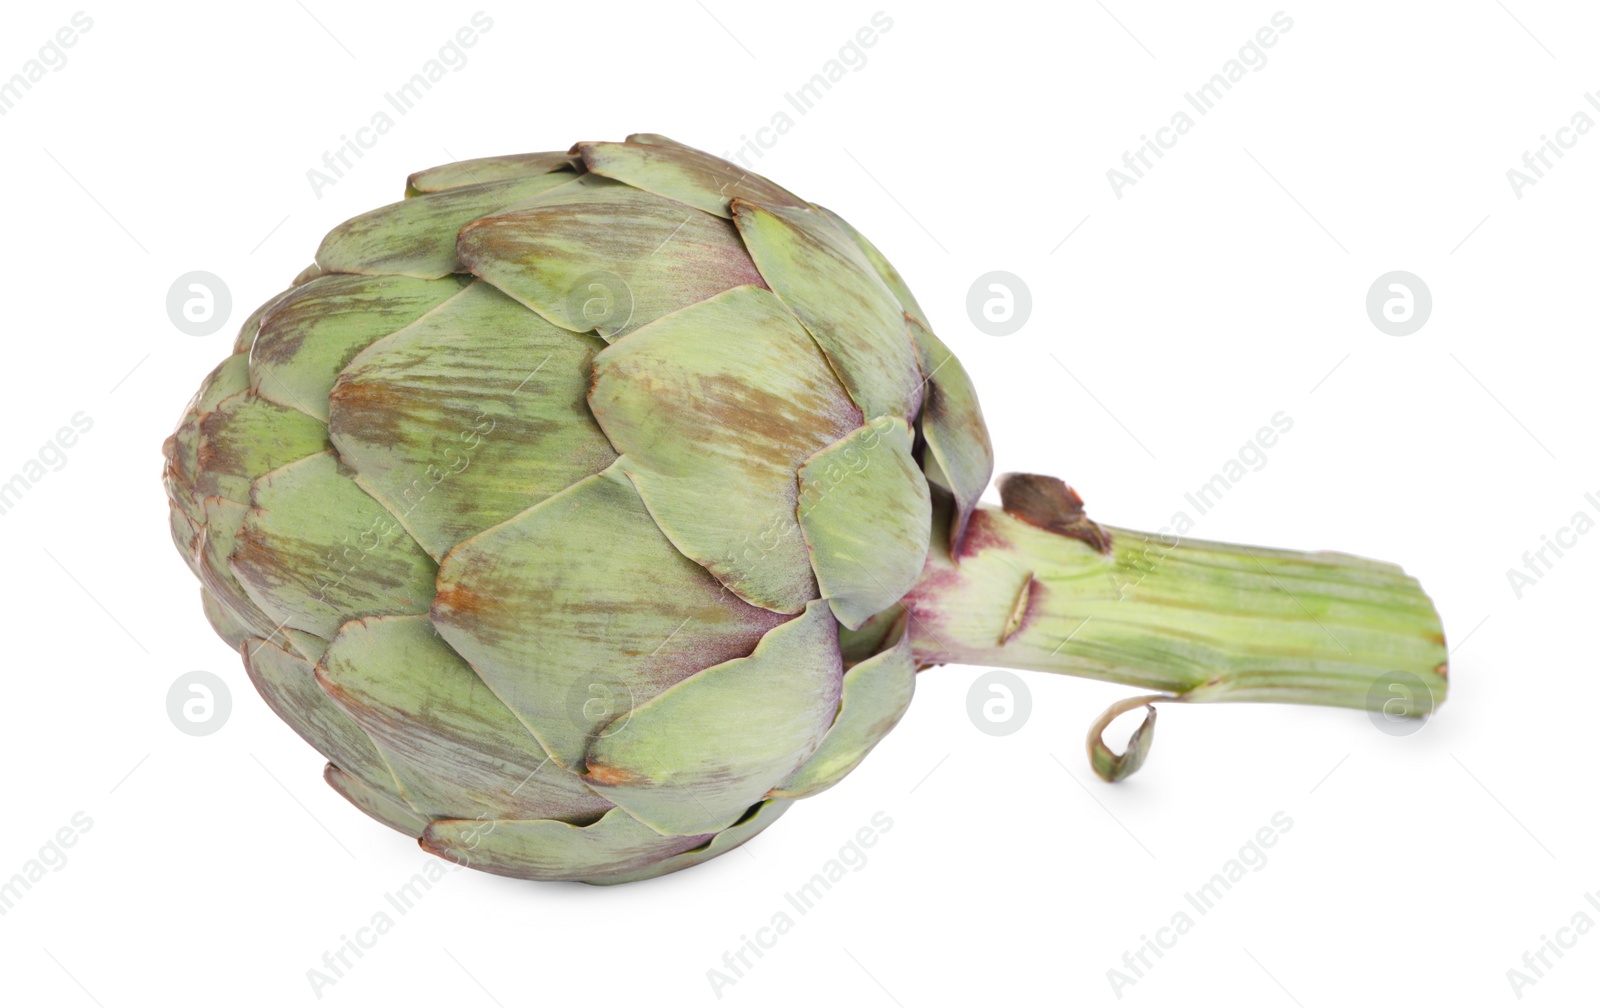 Photo of Whole fresh raw artichoke isolated on white